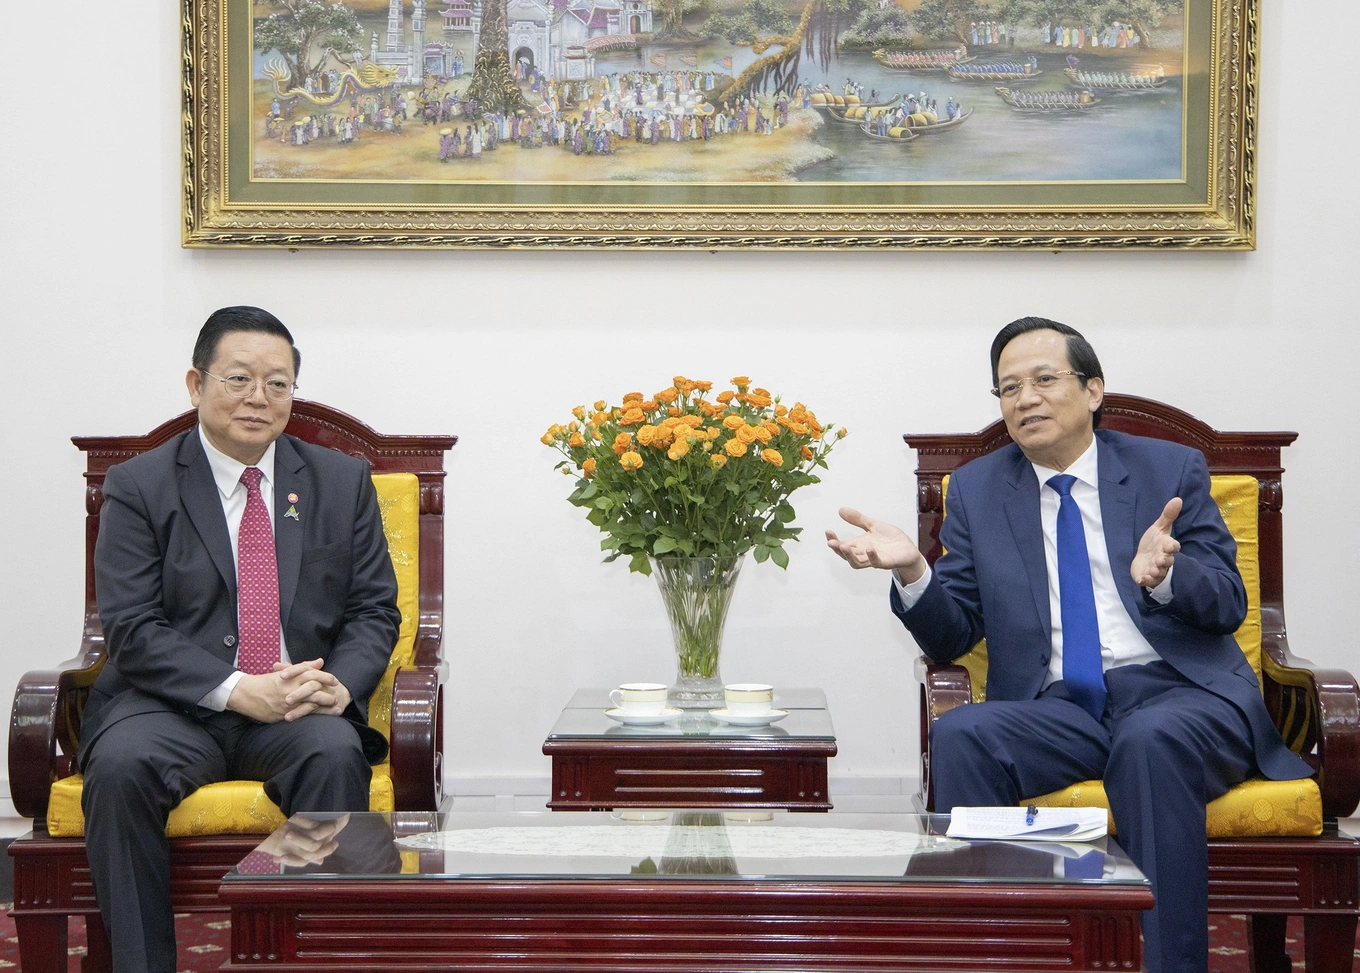 Bộ trưởng Đào Ngọc Dung khẳng định, Việt Nam luôn sẵn sàng hợp tác chặt chẽ với ASEAN để giải quyết các vấn đề chung của khu vực (Ảnh: Trần Thắng).